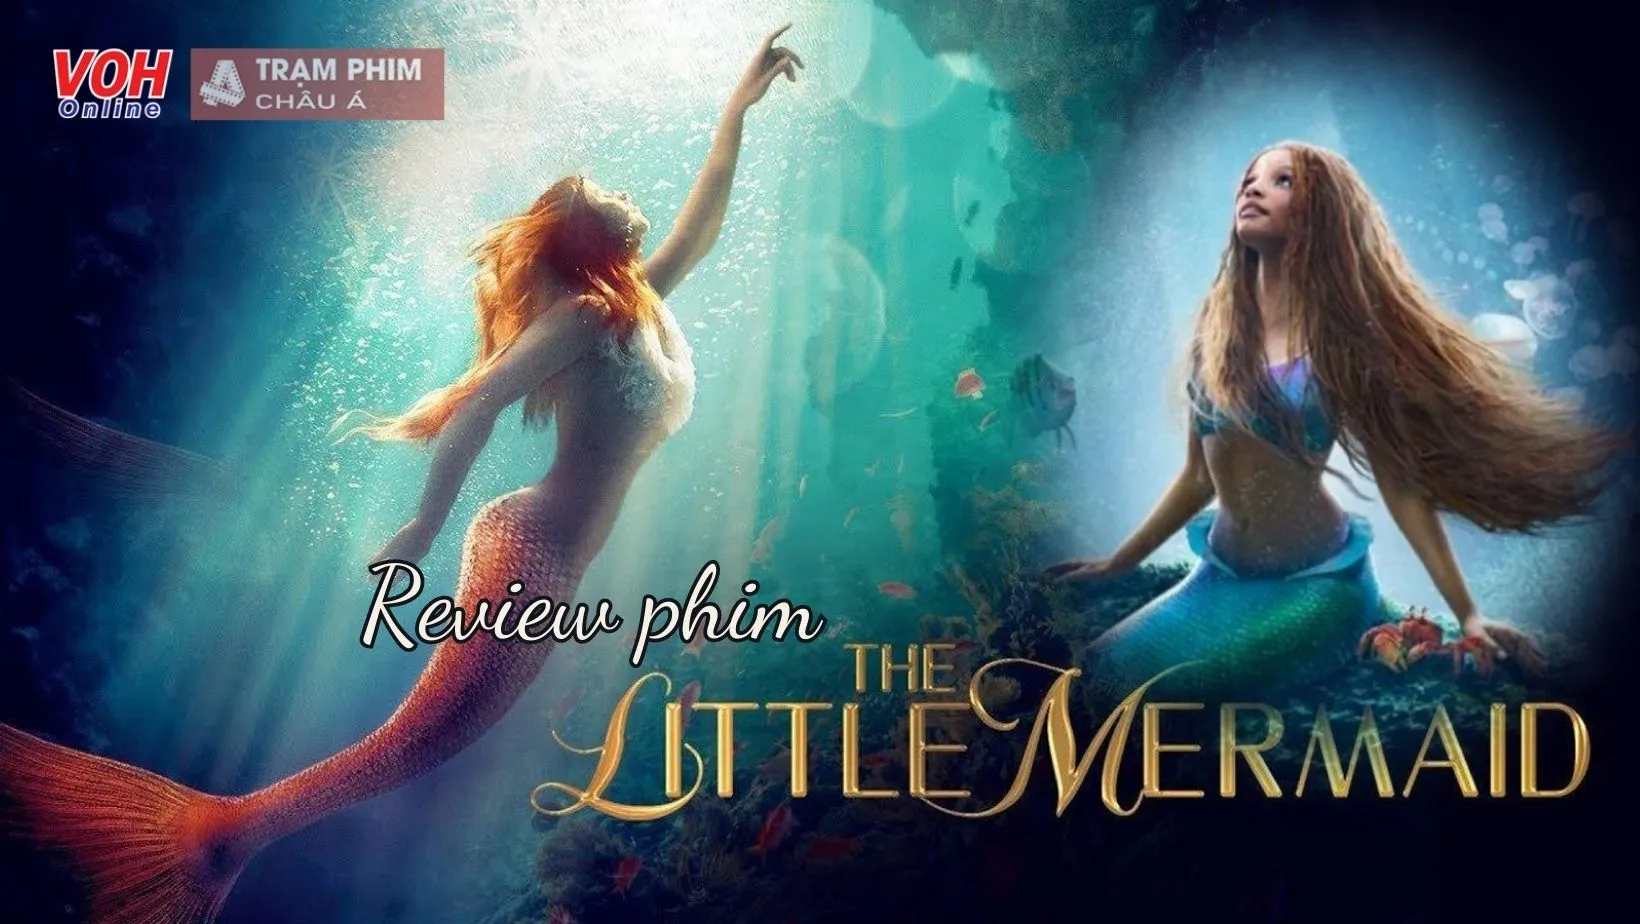 Review phim The Little Mermaid: Thiên nhiên dưới biển sâu từng milimet đều là tuyệt sắc